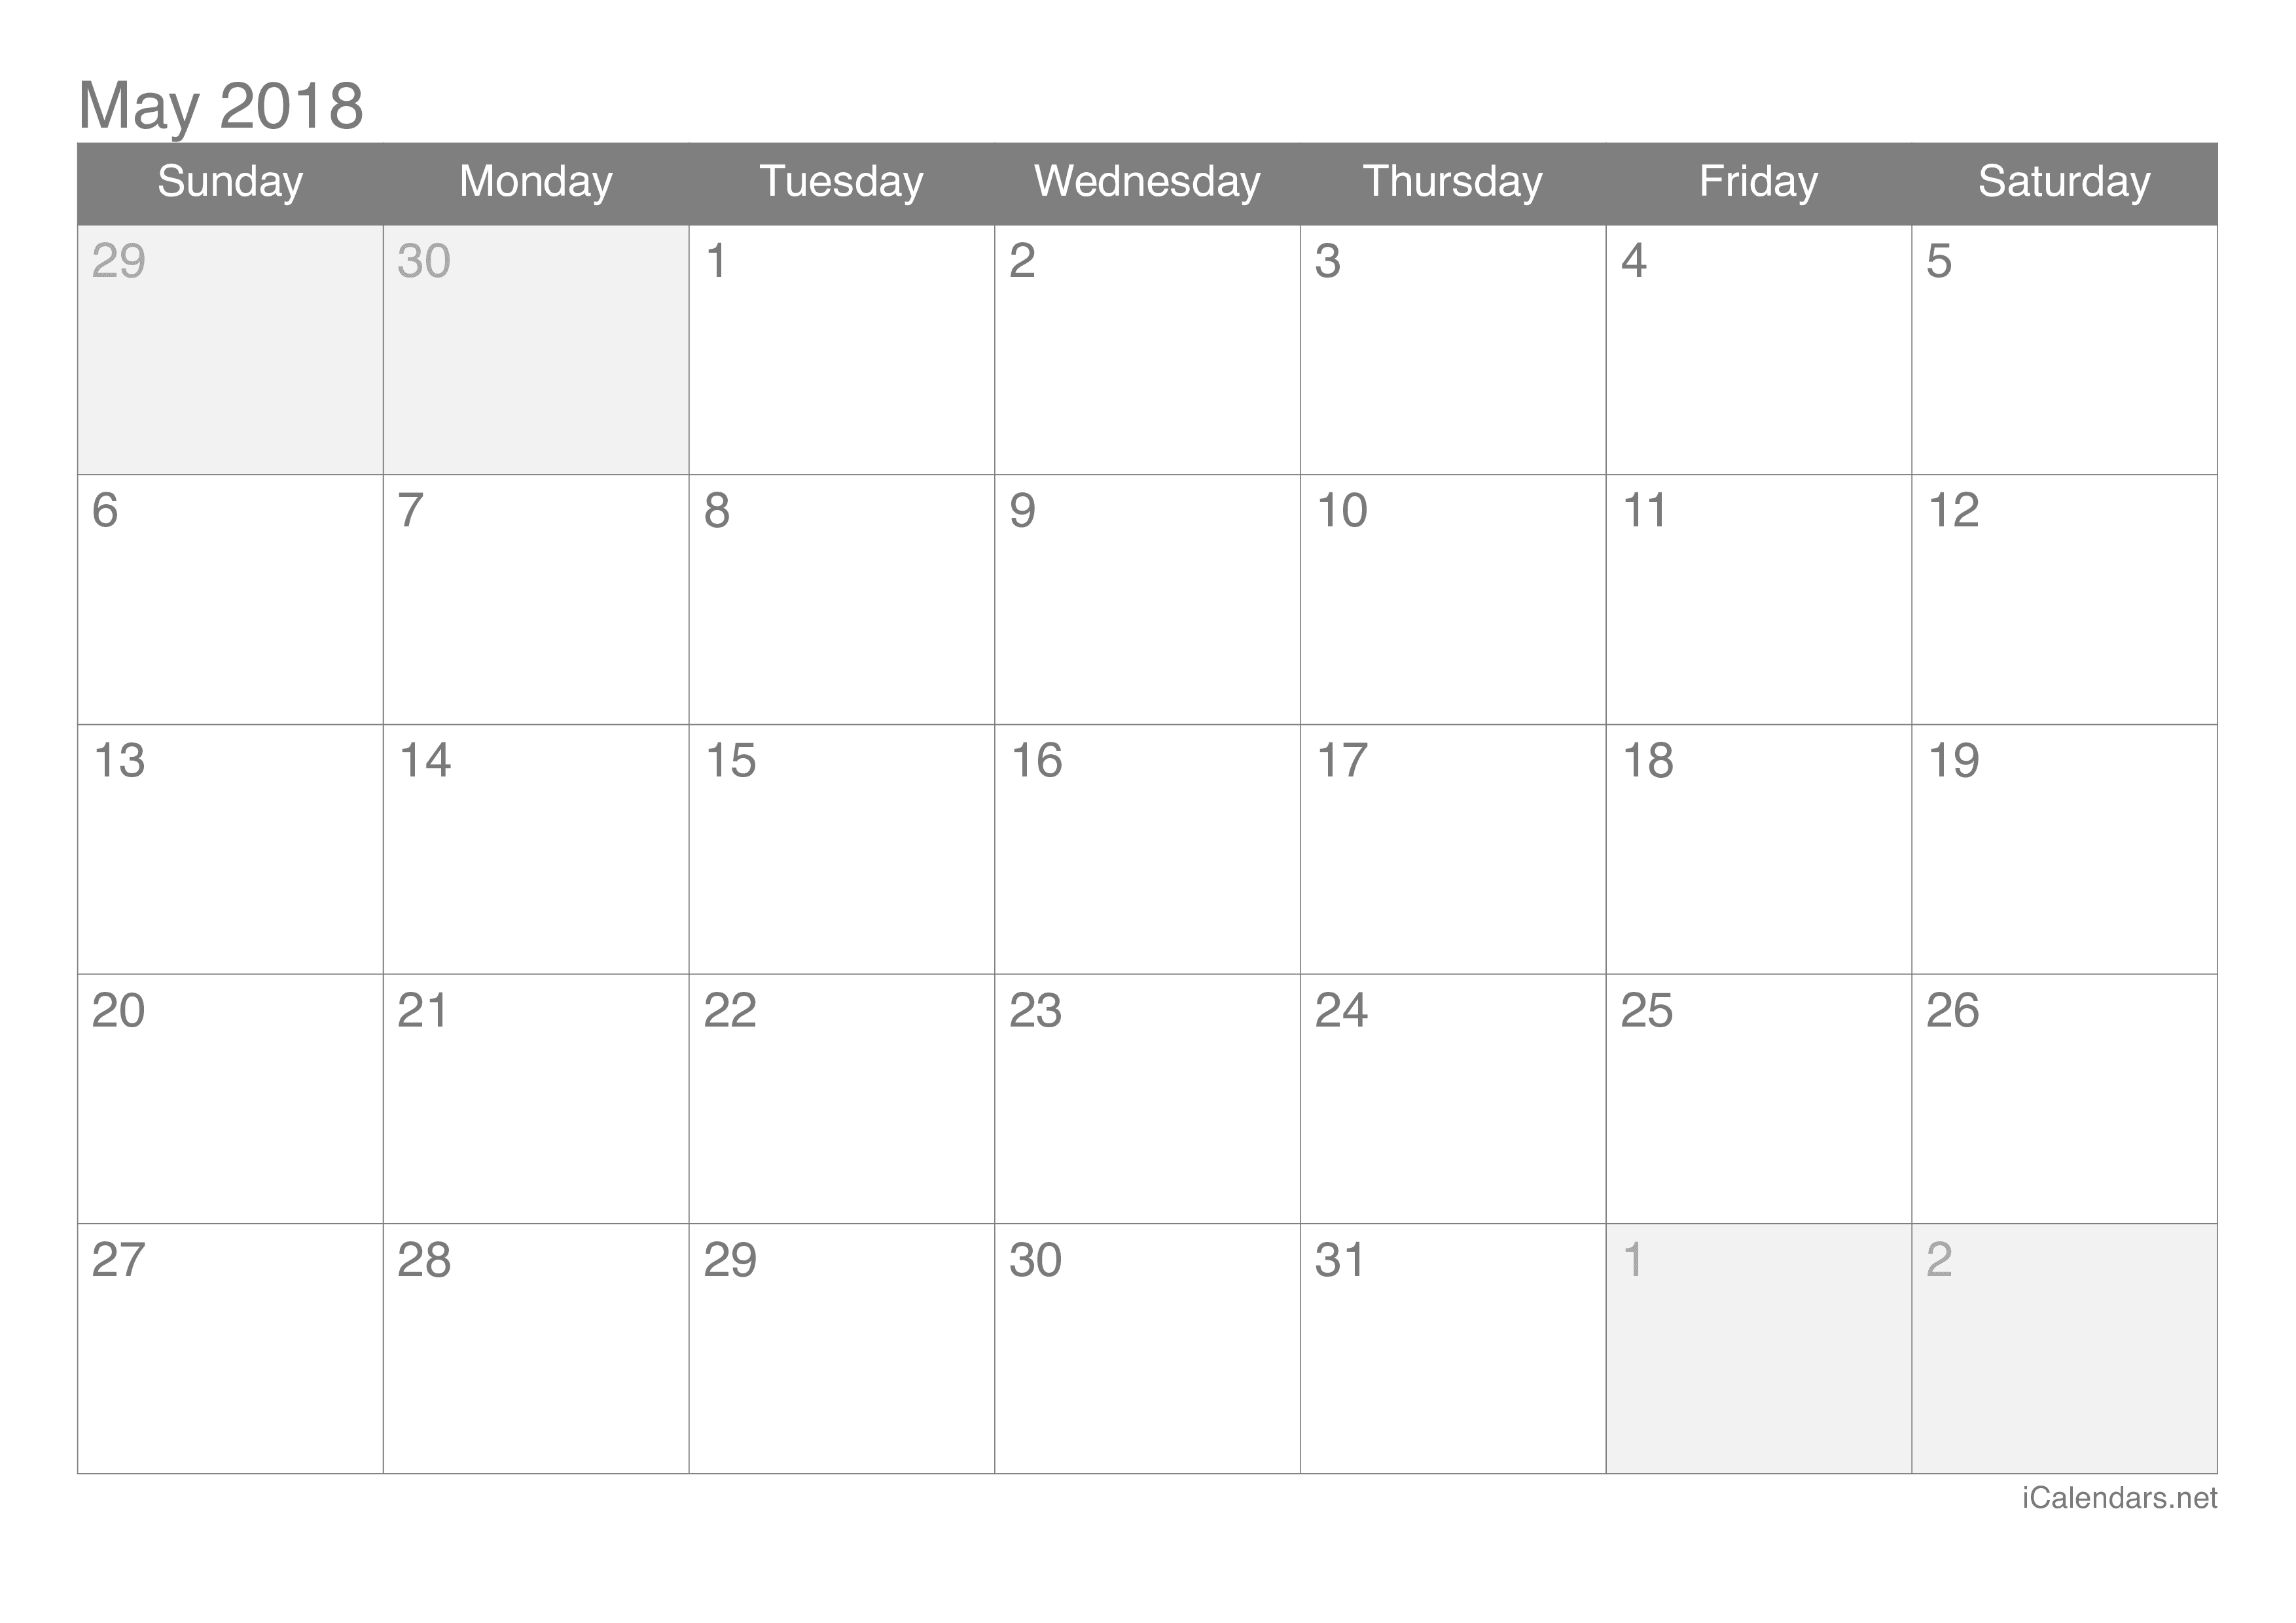 May 2018 Calendar Template Cute